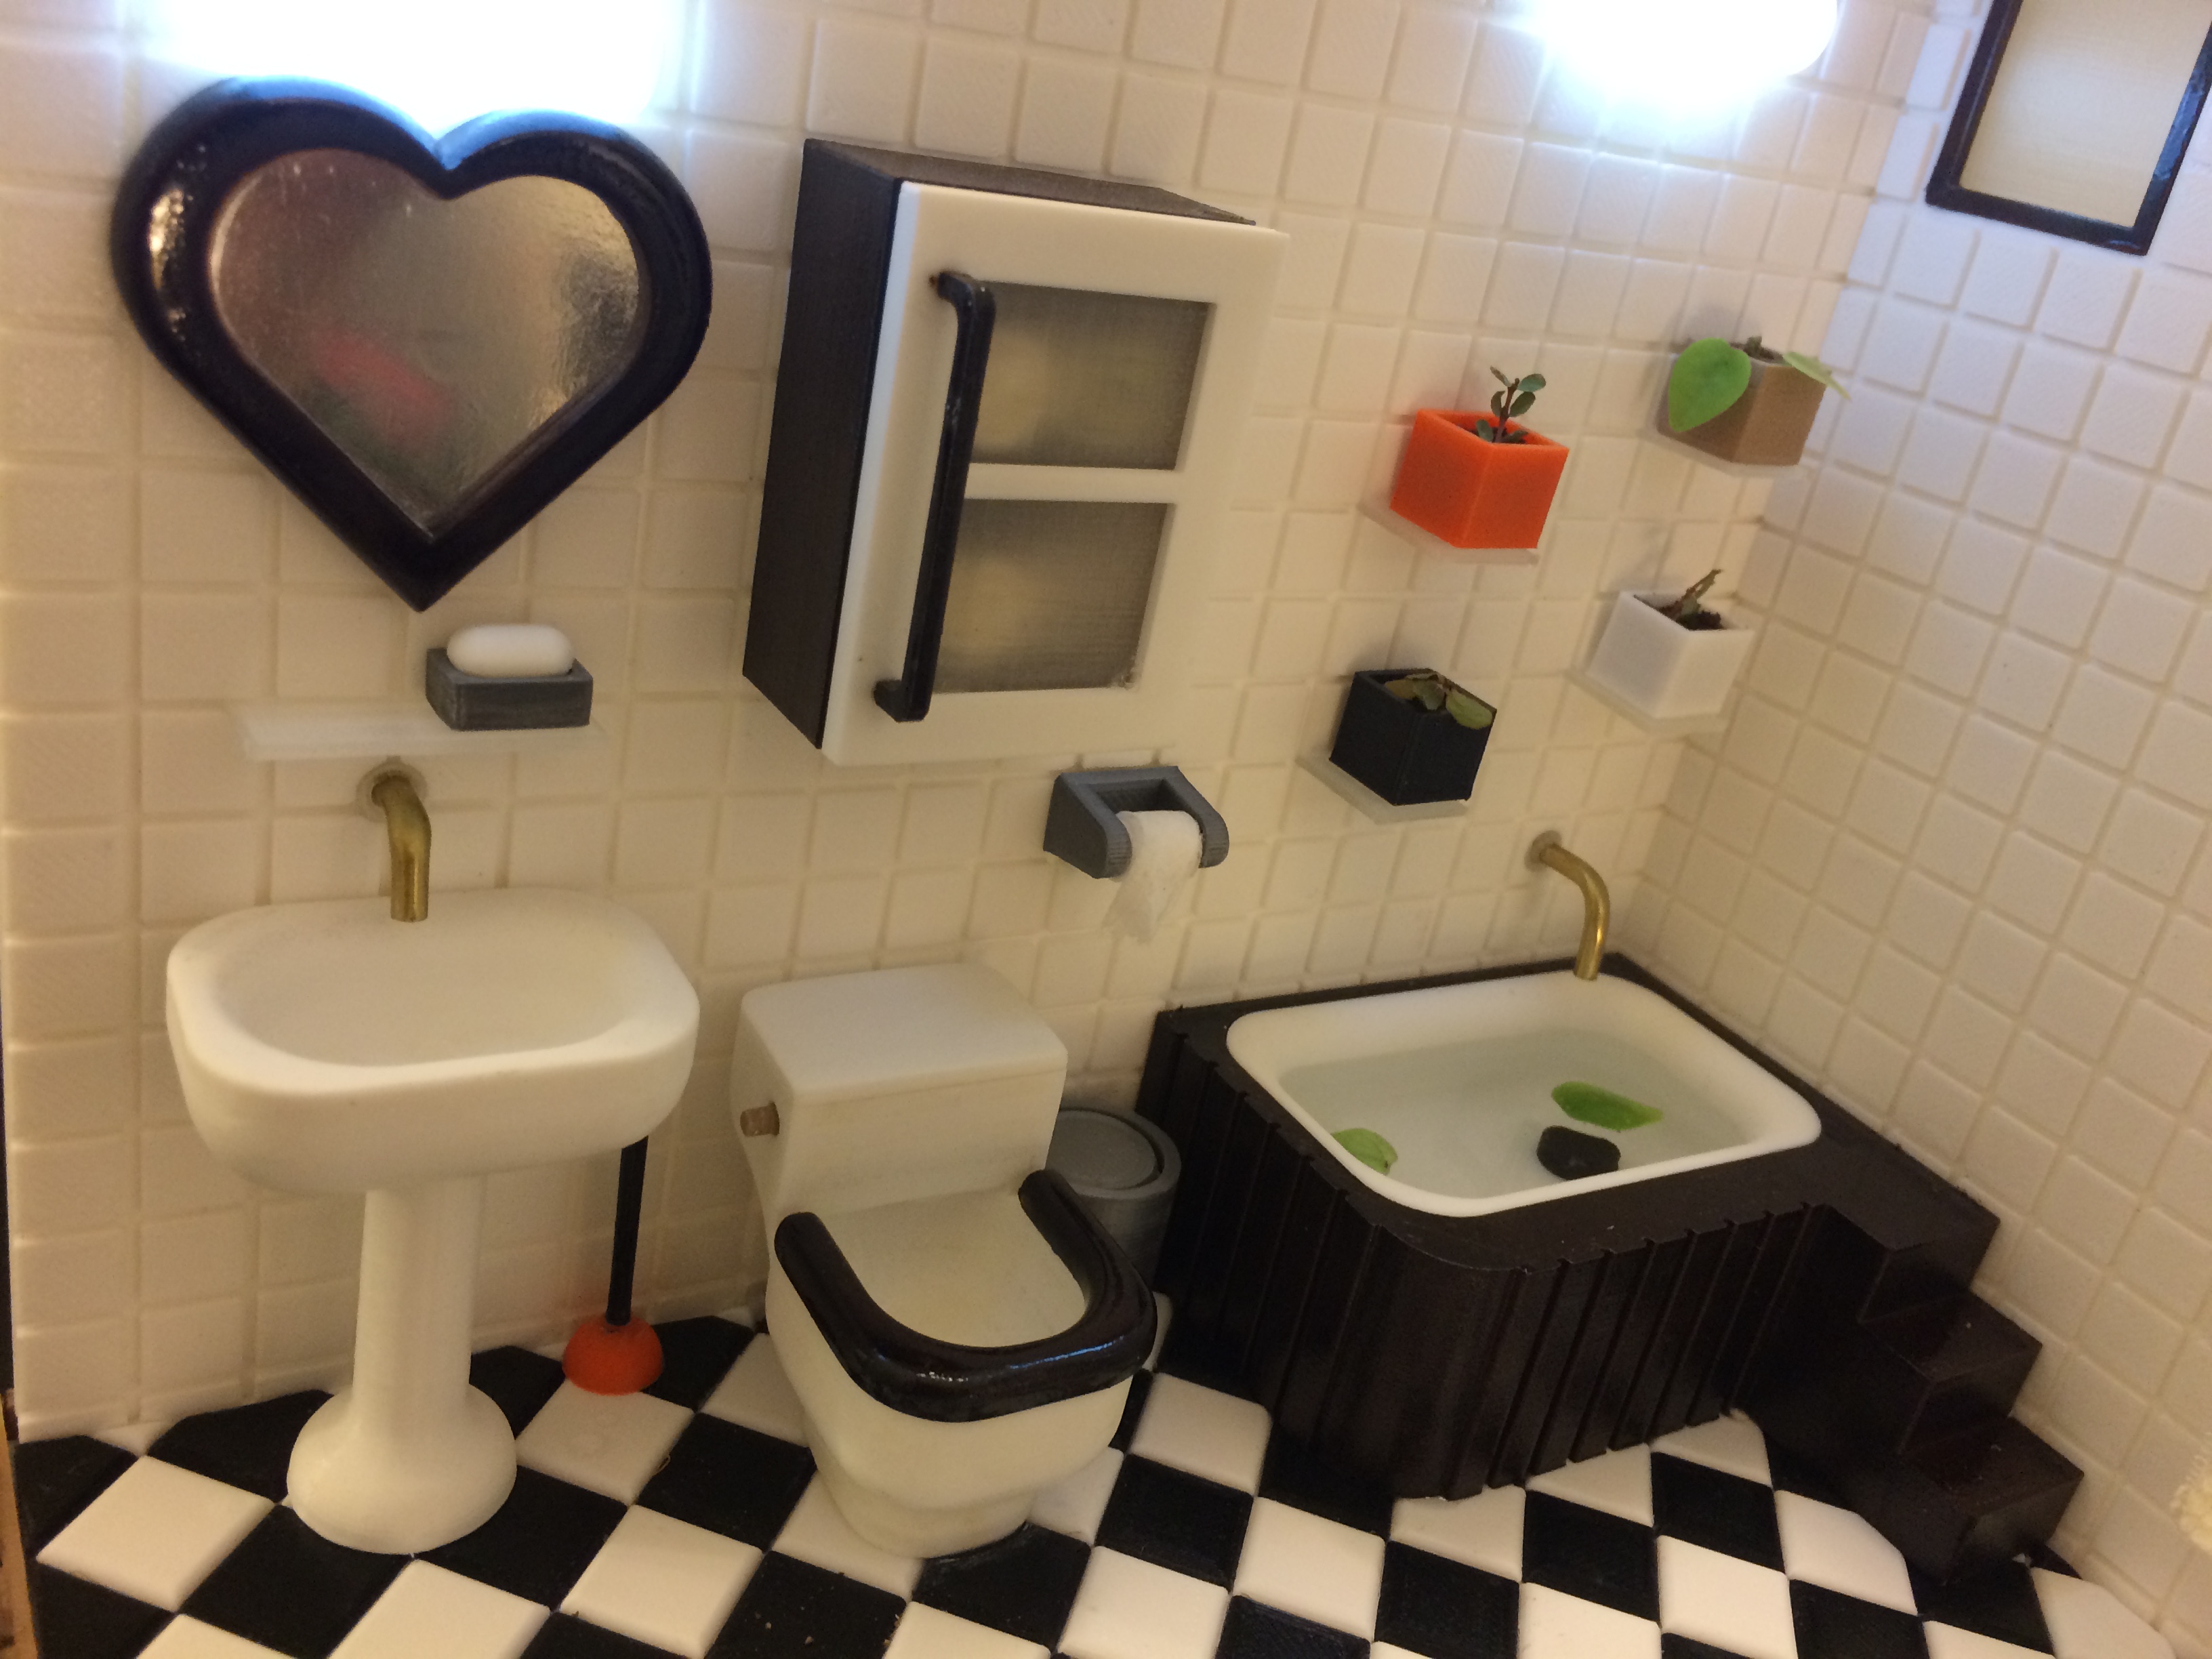 Miniature Toilet(bathroom)